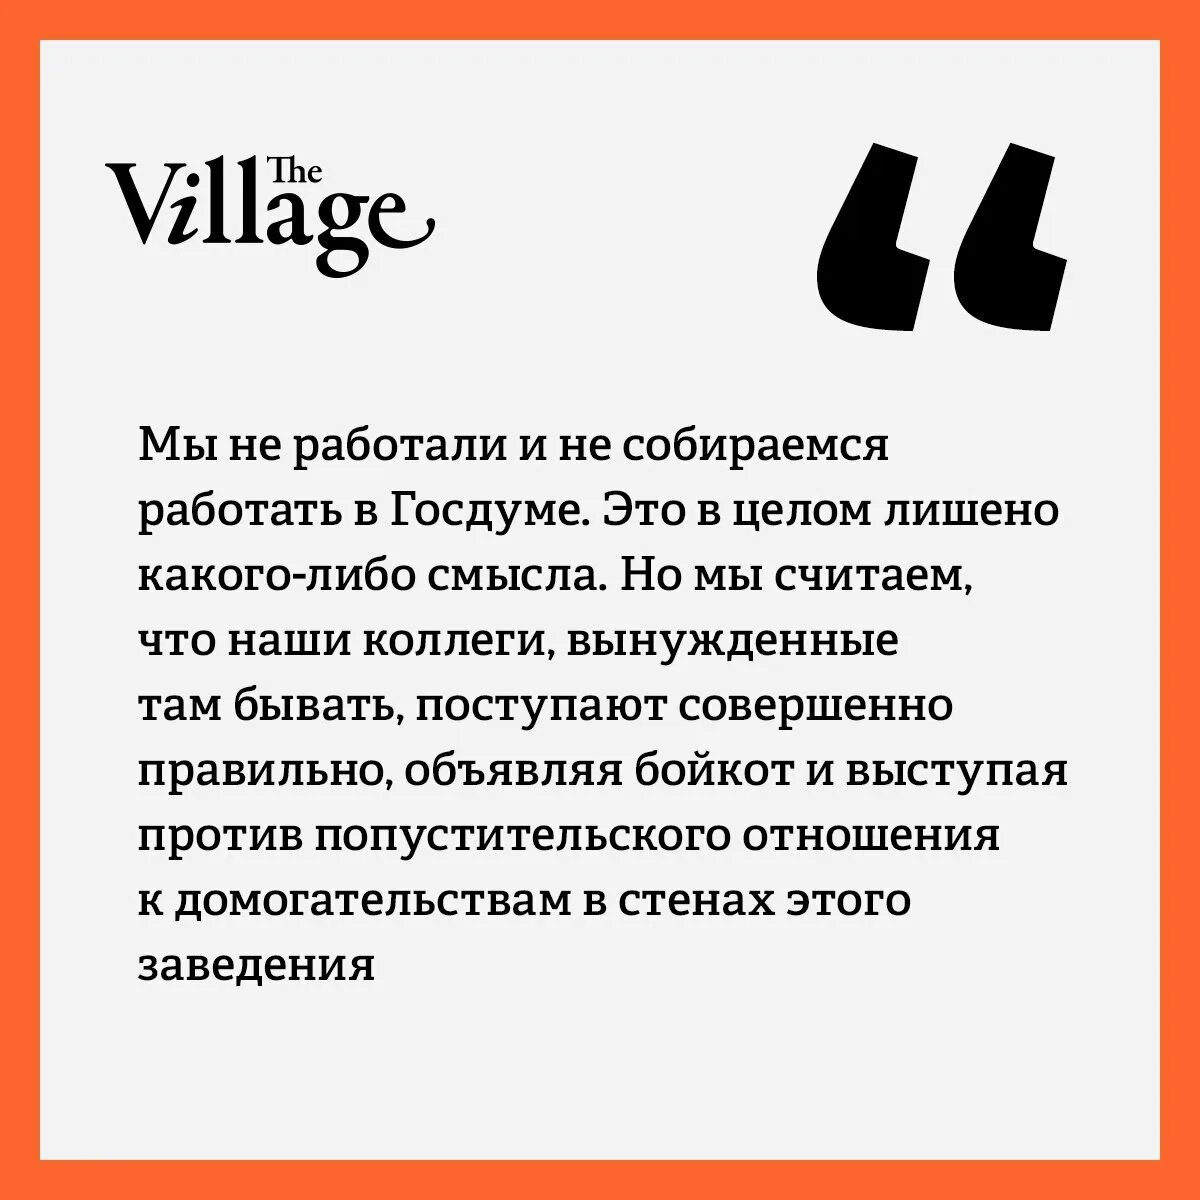 Села телеграмм. The Village журнал.